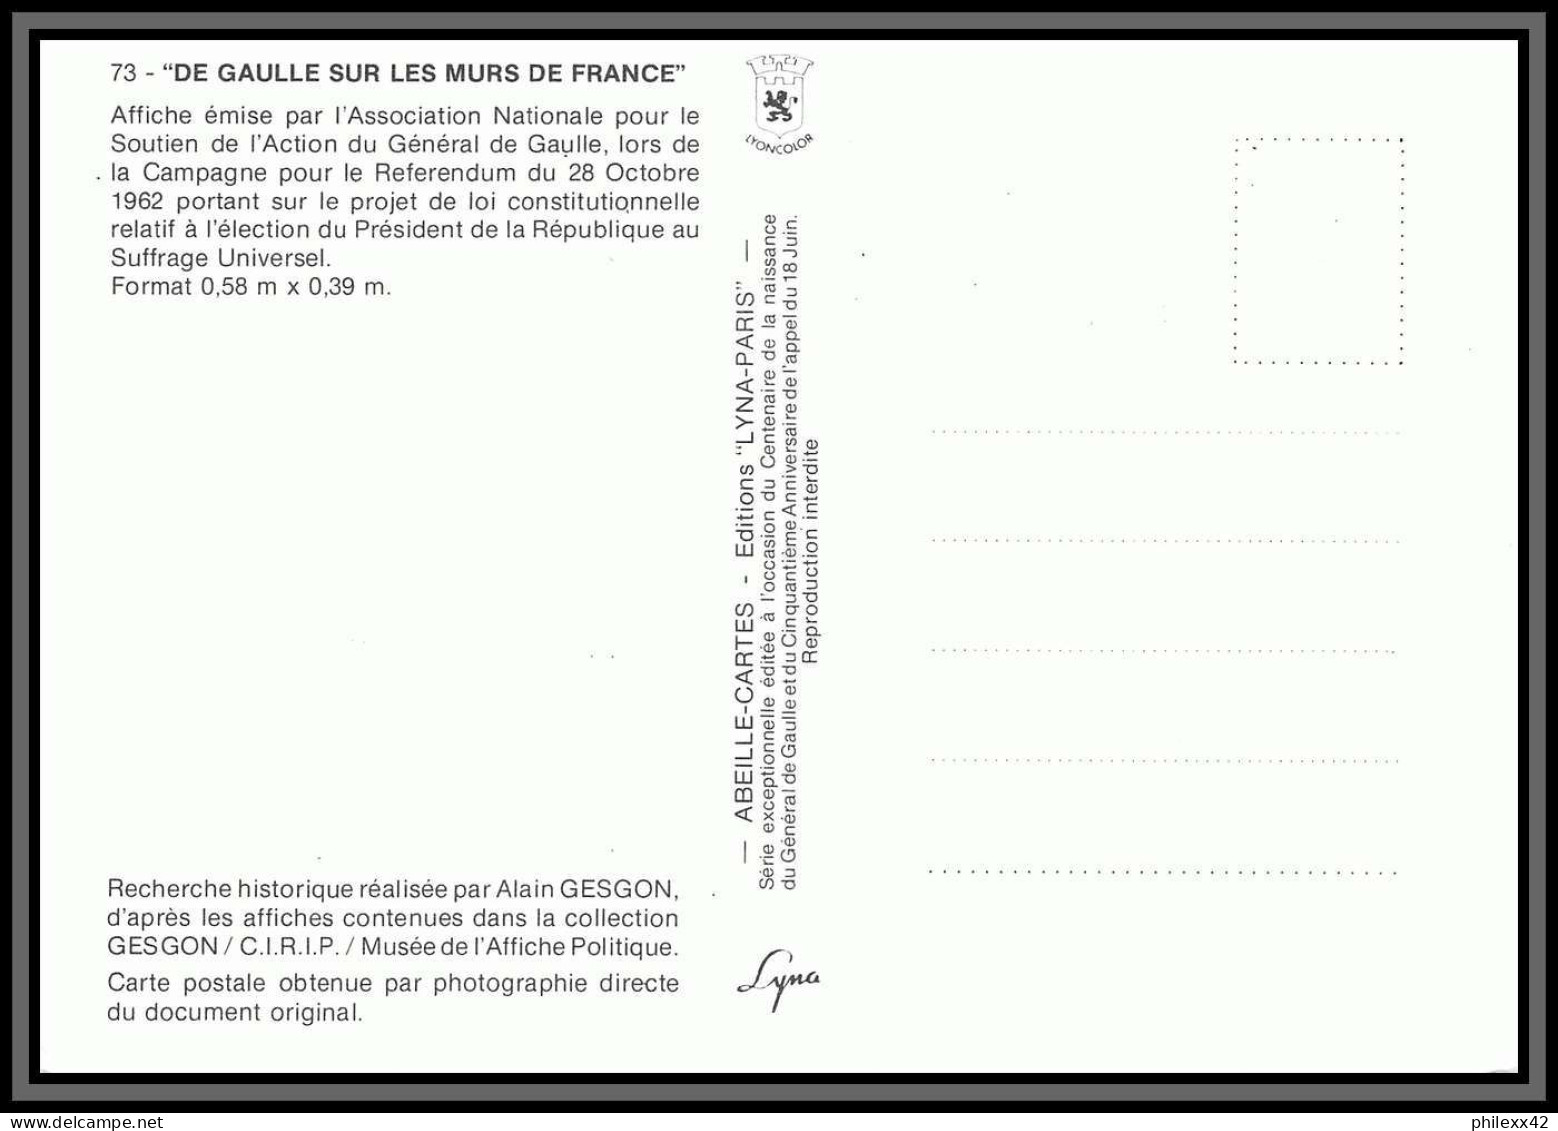 5842 Carte Maximum (card) France N°2634 Général De Gaulle 1990 Guerre 1939/1945 De Gaulle WW2 édition LYNA Paris - 1990-1999